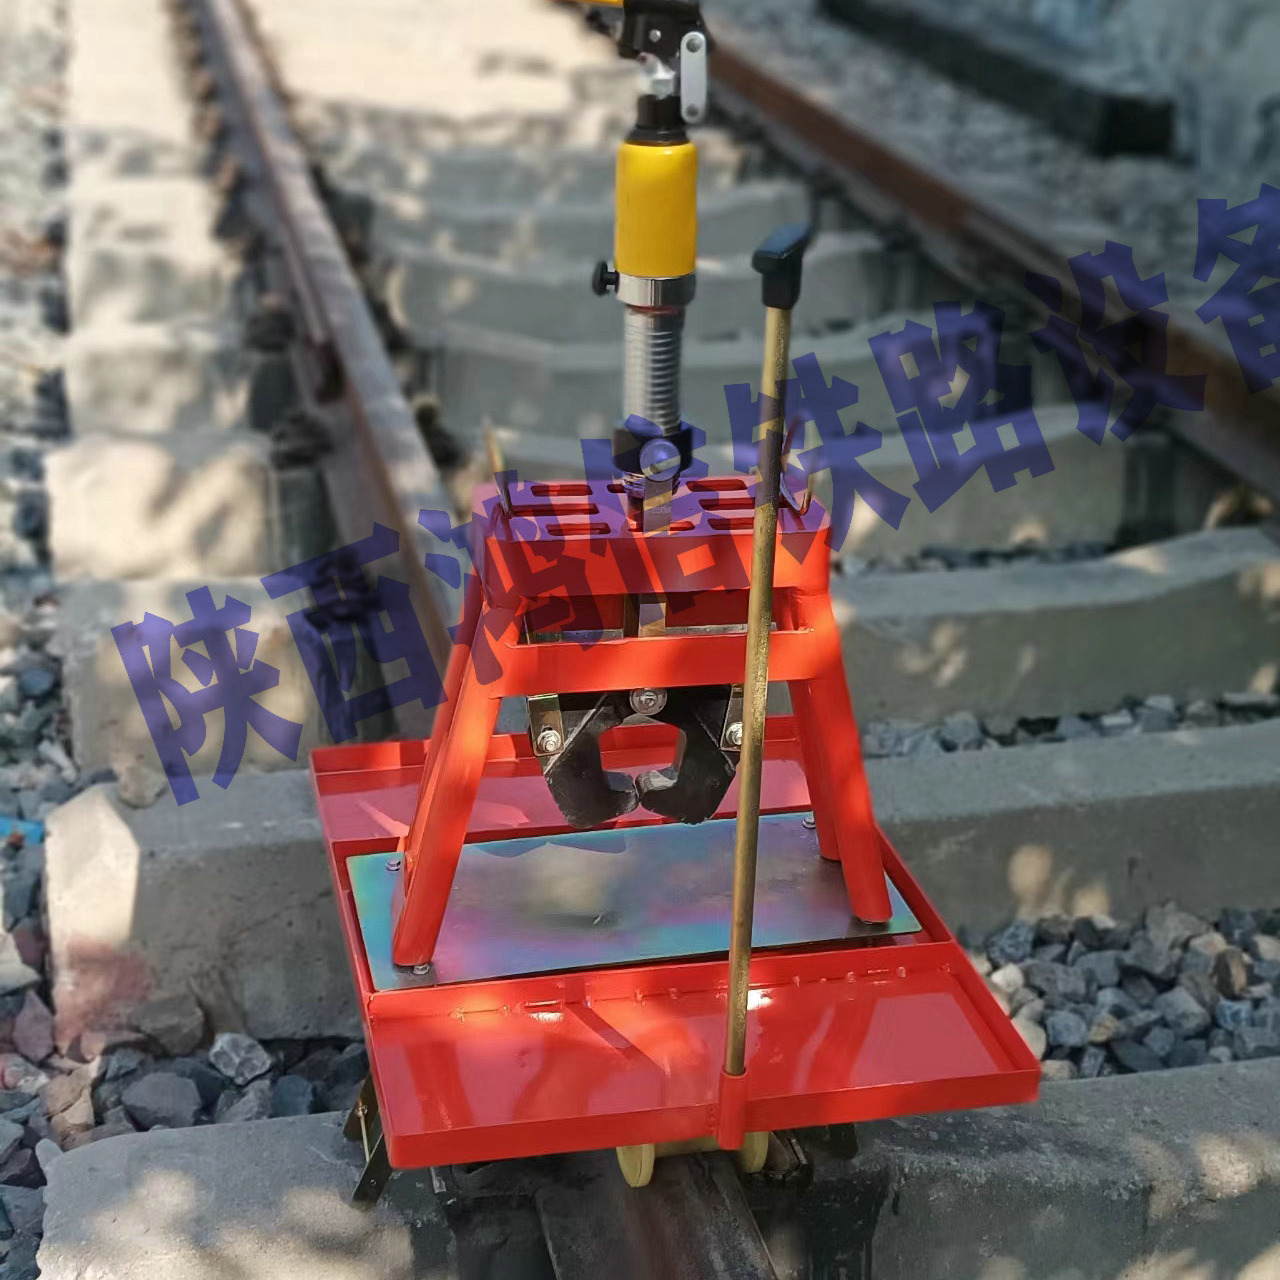 铁路轨底与轨枕施工用钢轨提拉器及自稳定单轨走行小车陕西鸿信铁路设备